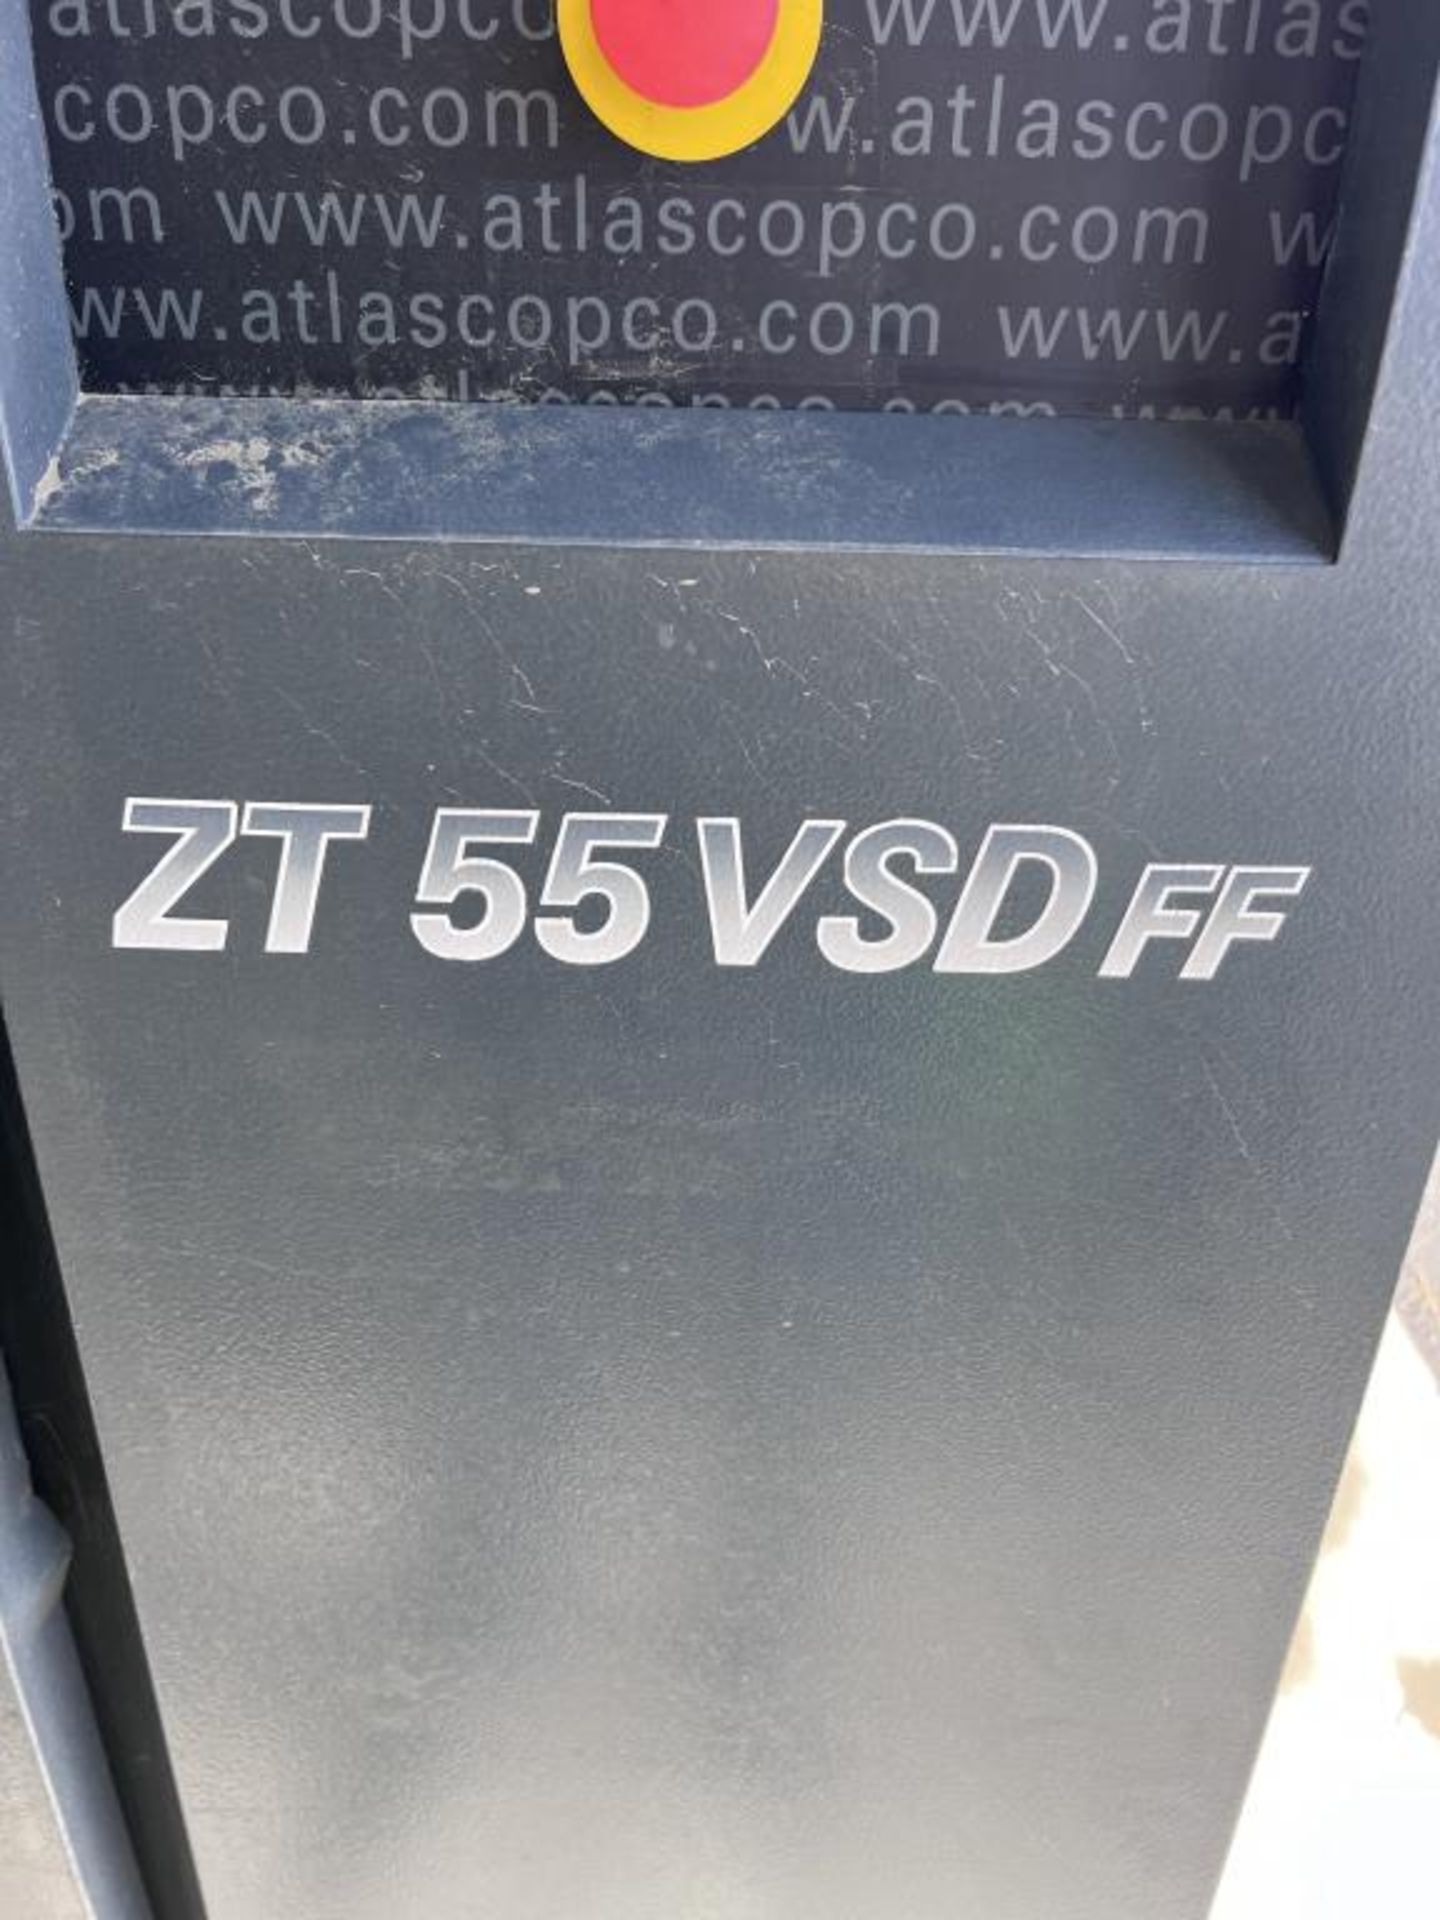 Atlas Copco ZT55VSDff Air Compressor - Image 6 of 6